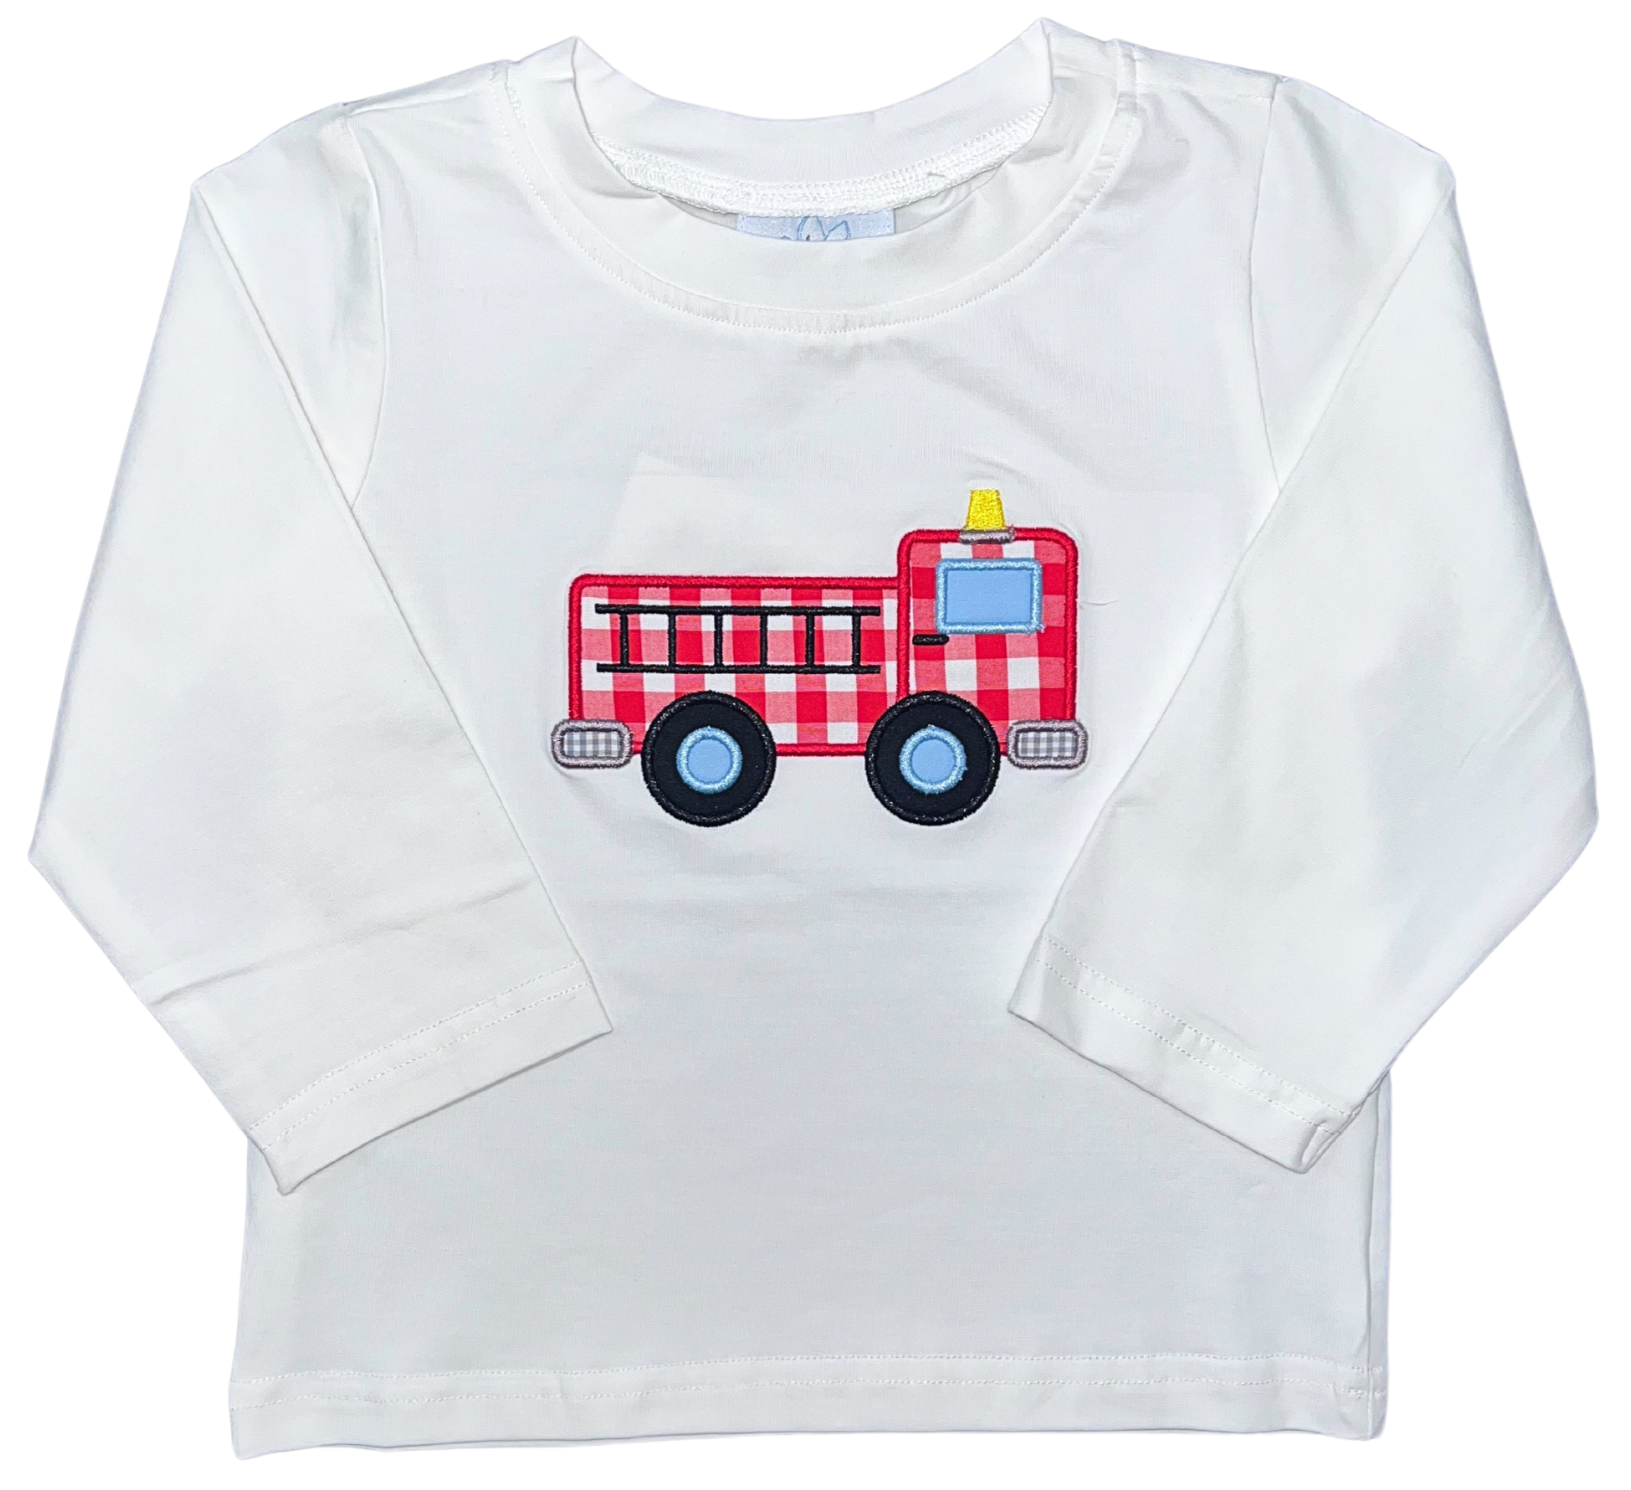 Fire Truck Long Sleeve T-shirt